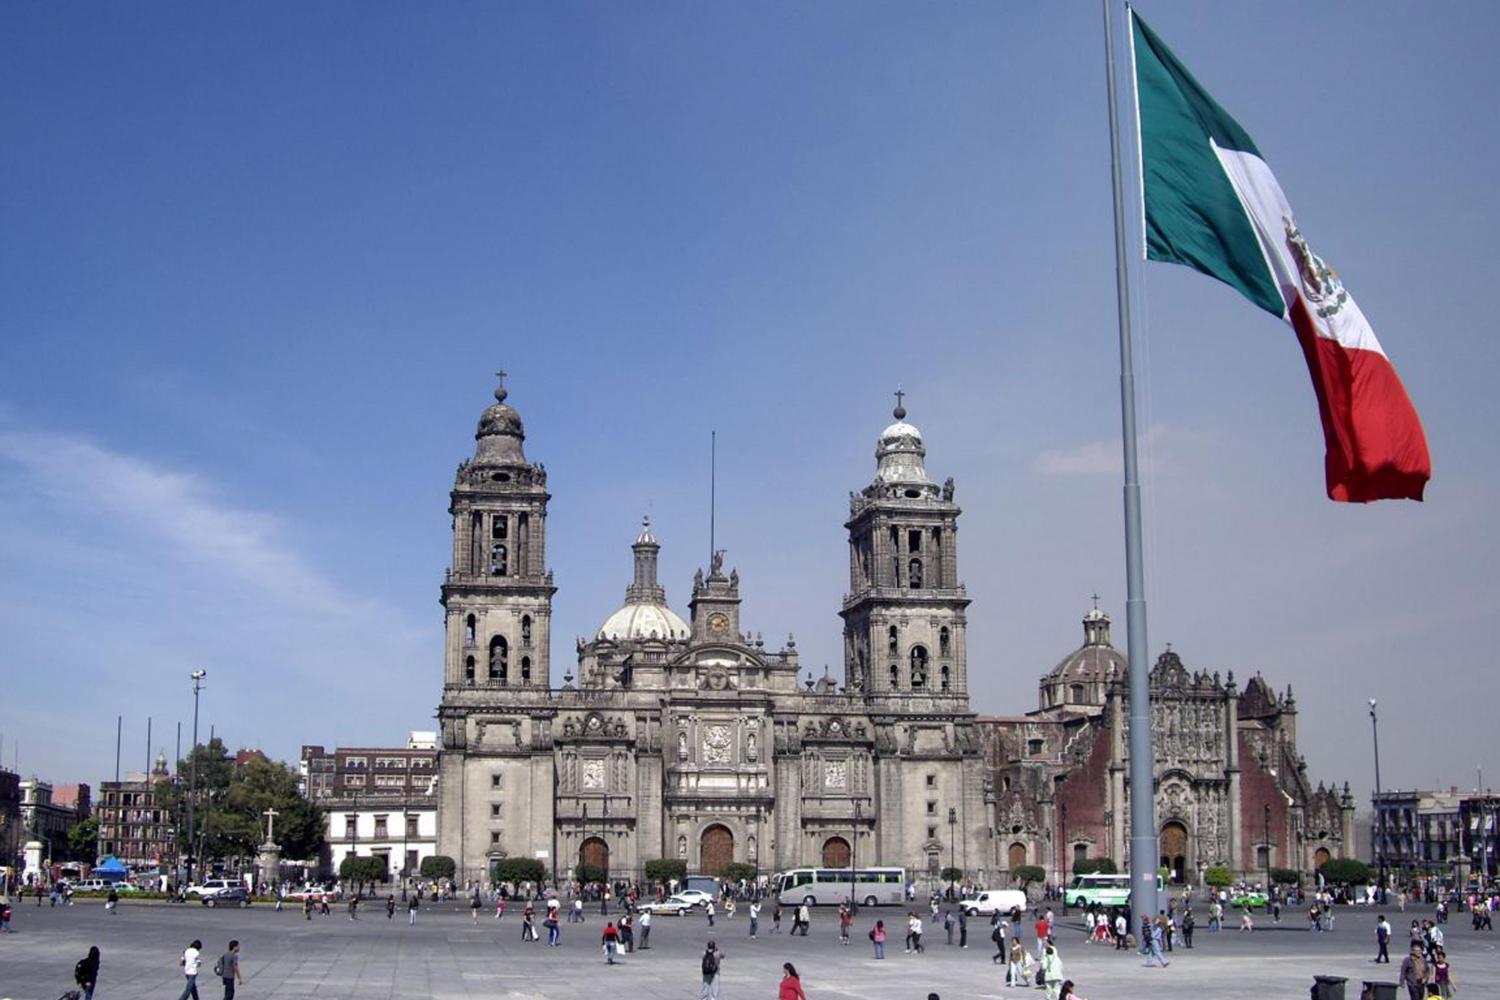 Столица страны мехико. Сокало Мехико. Сьюдад-де-Мехико. Сьюдад-де-Мехико (Мехико). Площадь Сокало в Мехико.